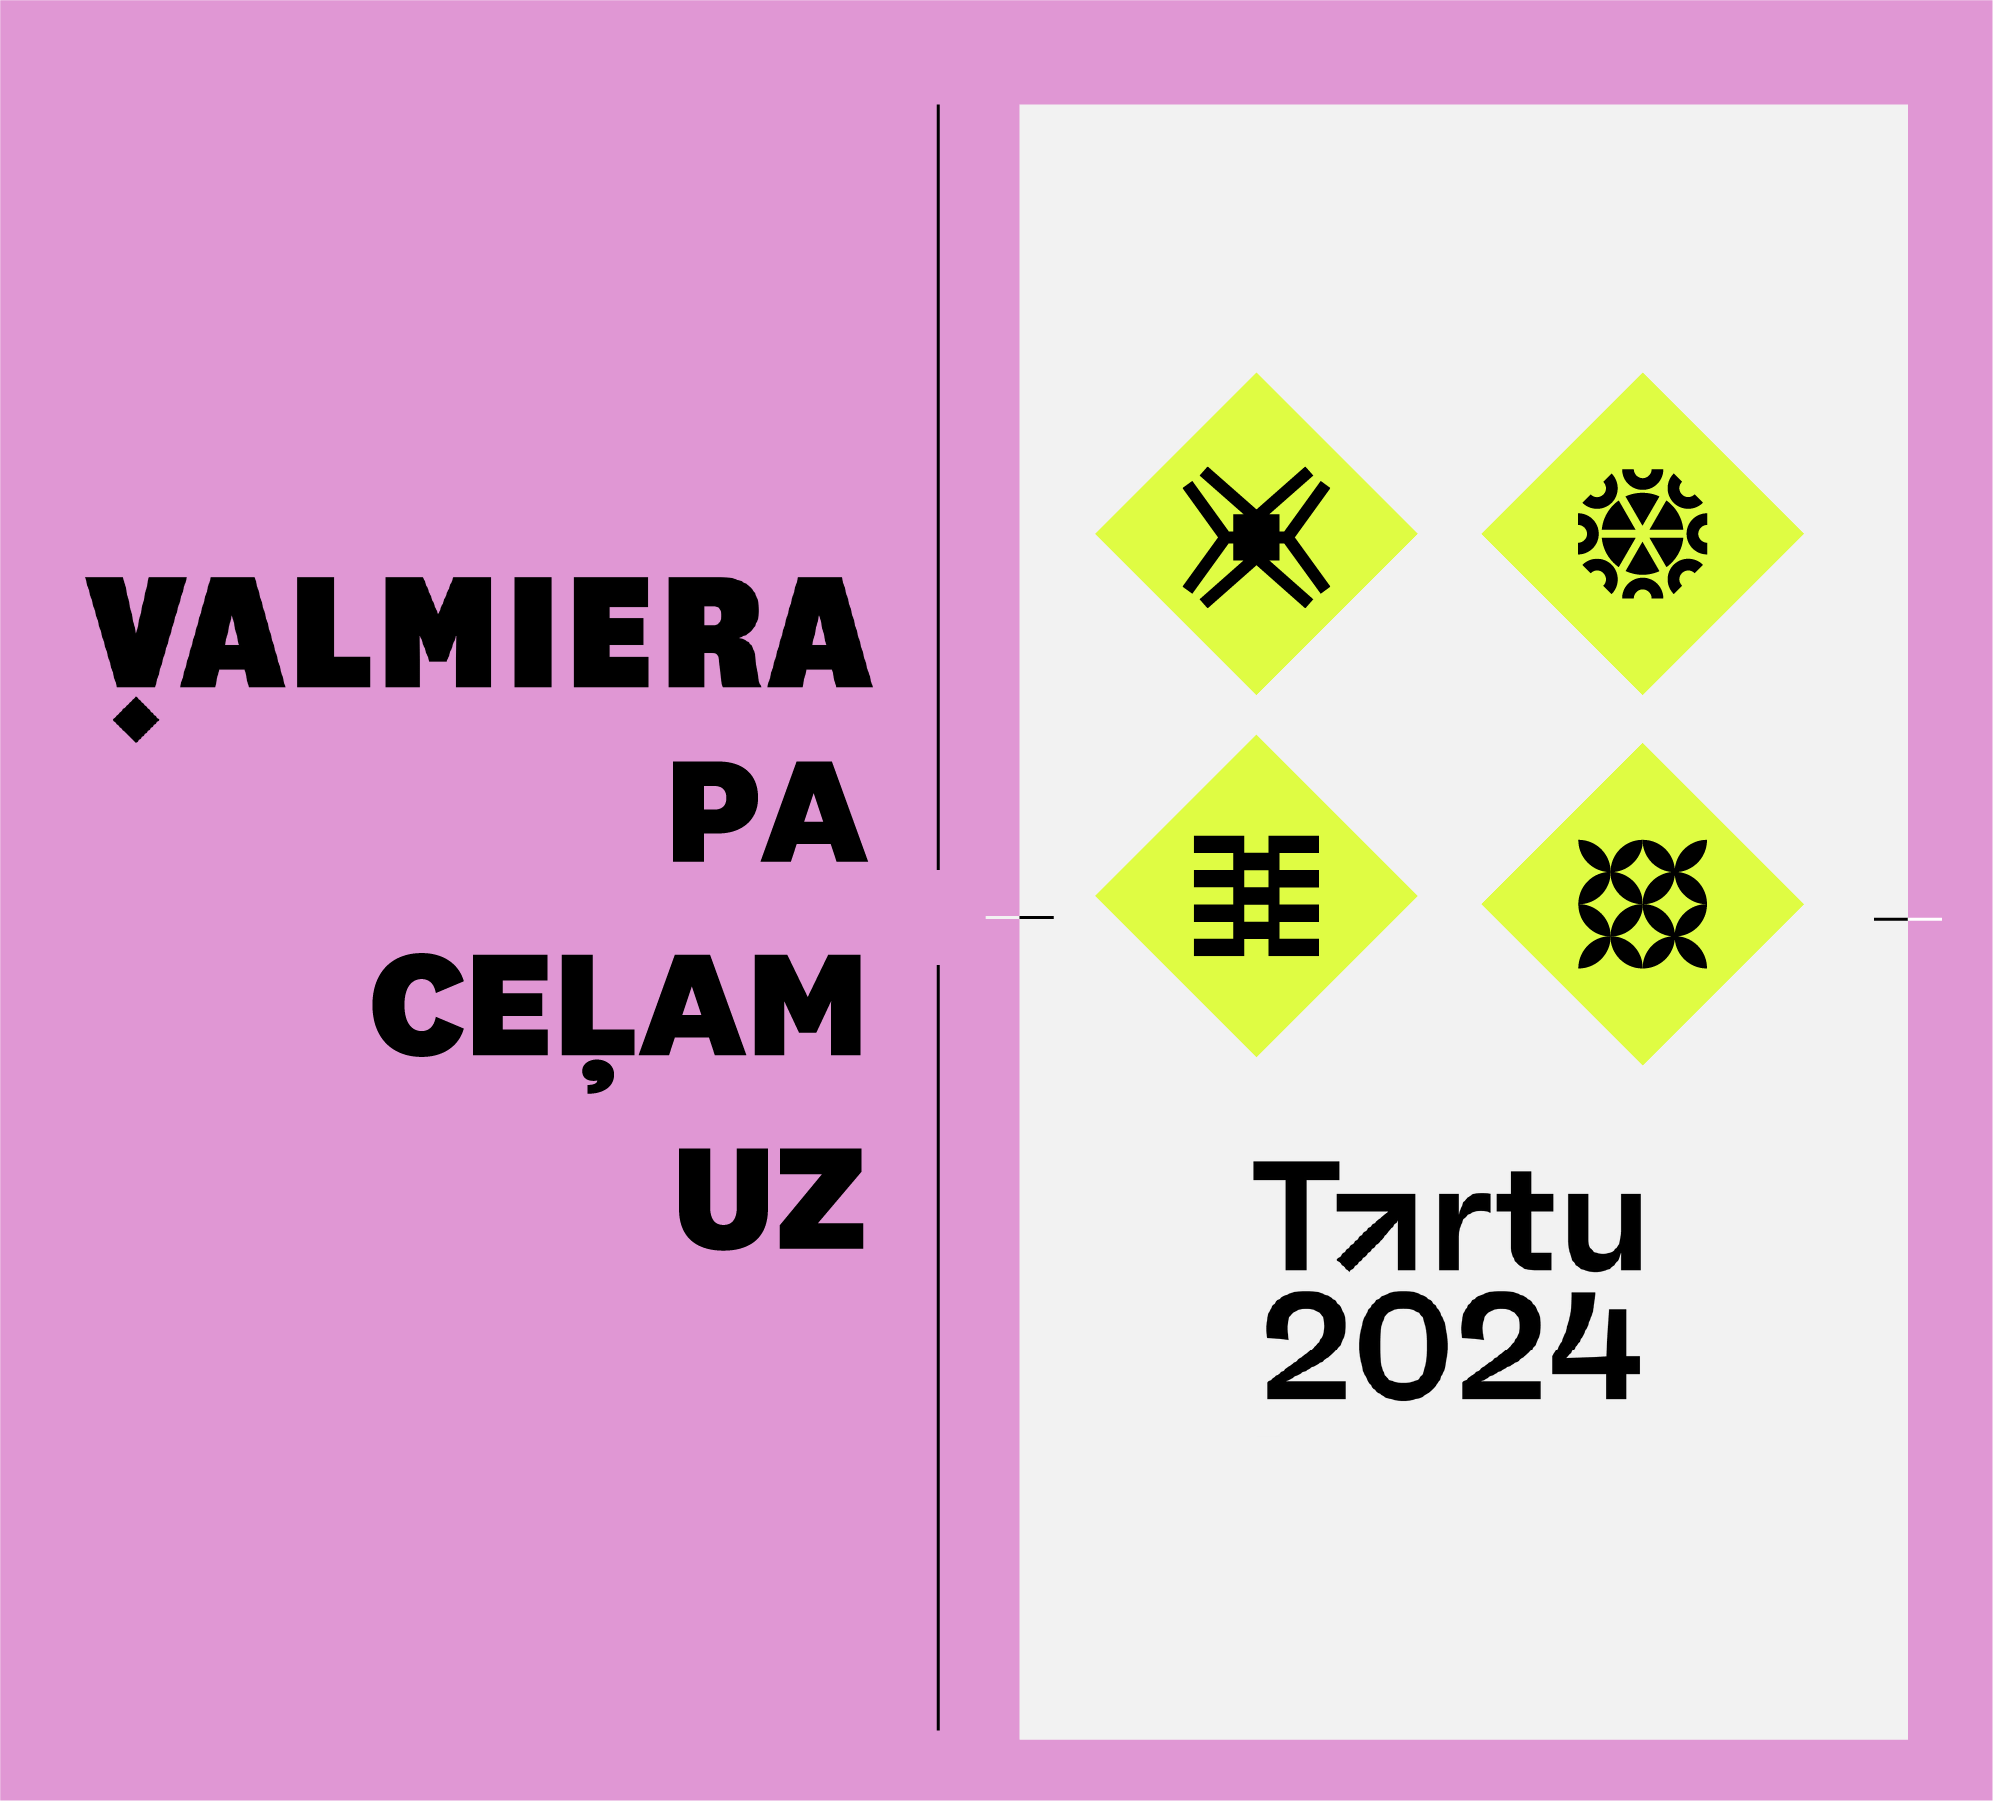 Valmiera ir pa ceļam uz Tartu – Eiropas kultūras galvaspilsētu 2024!